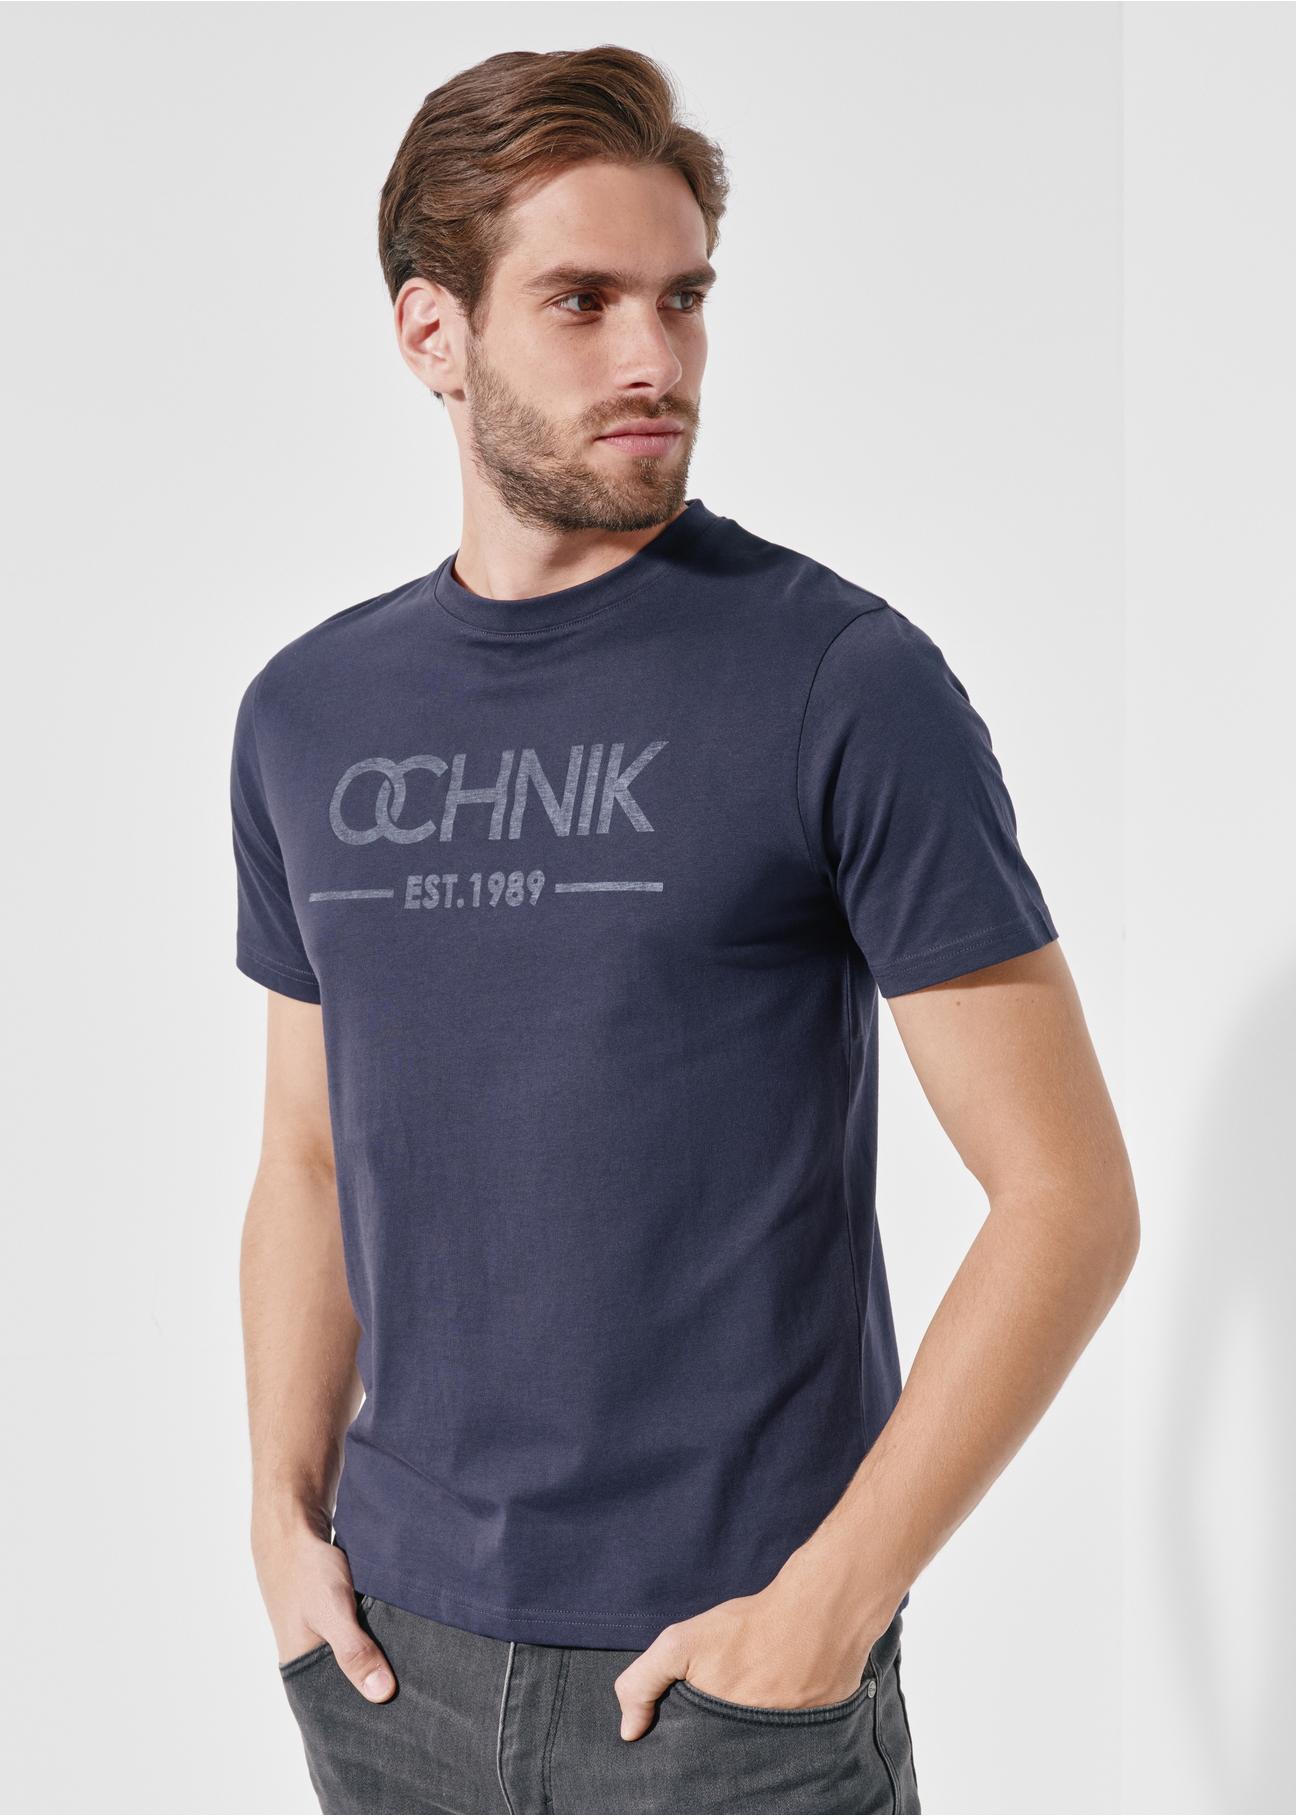 Granatowy T-shirt męski z logo TSHMT-0095-68(W24)